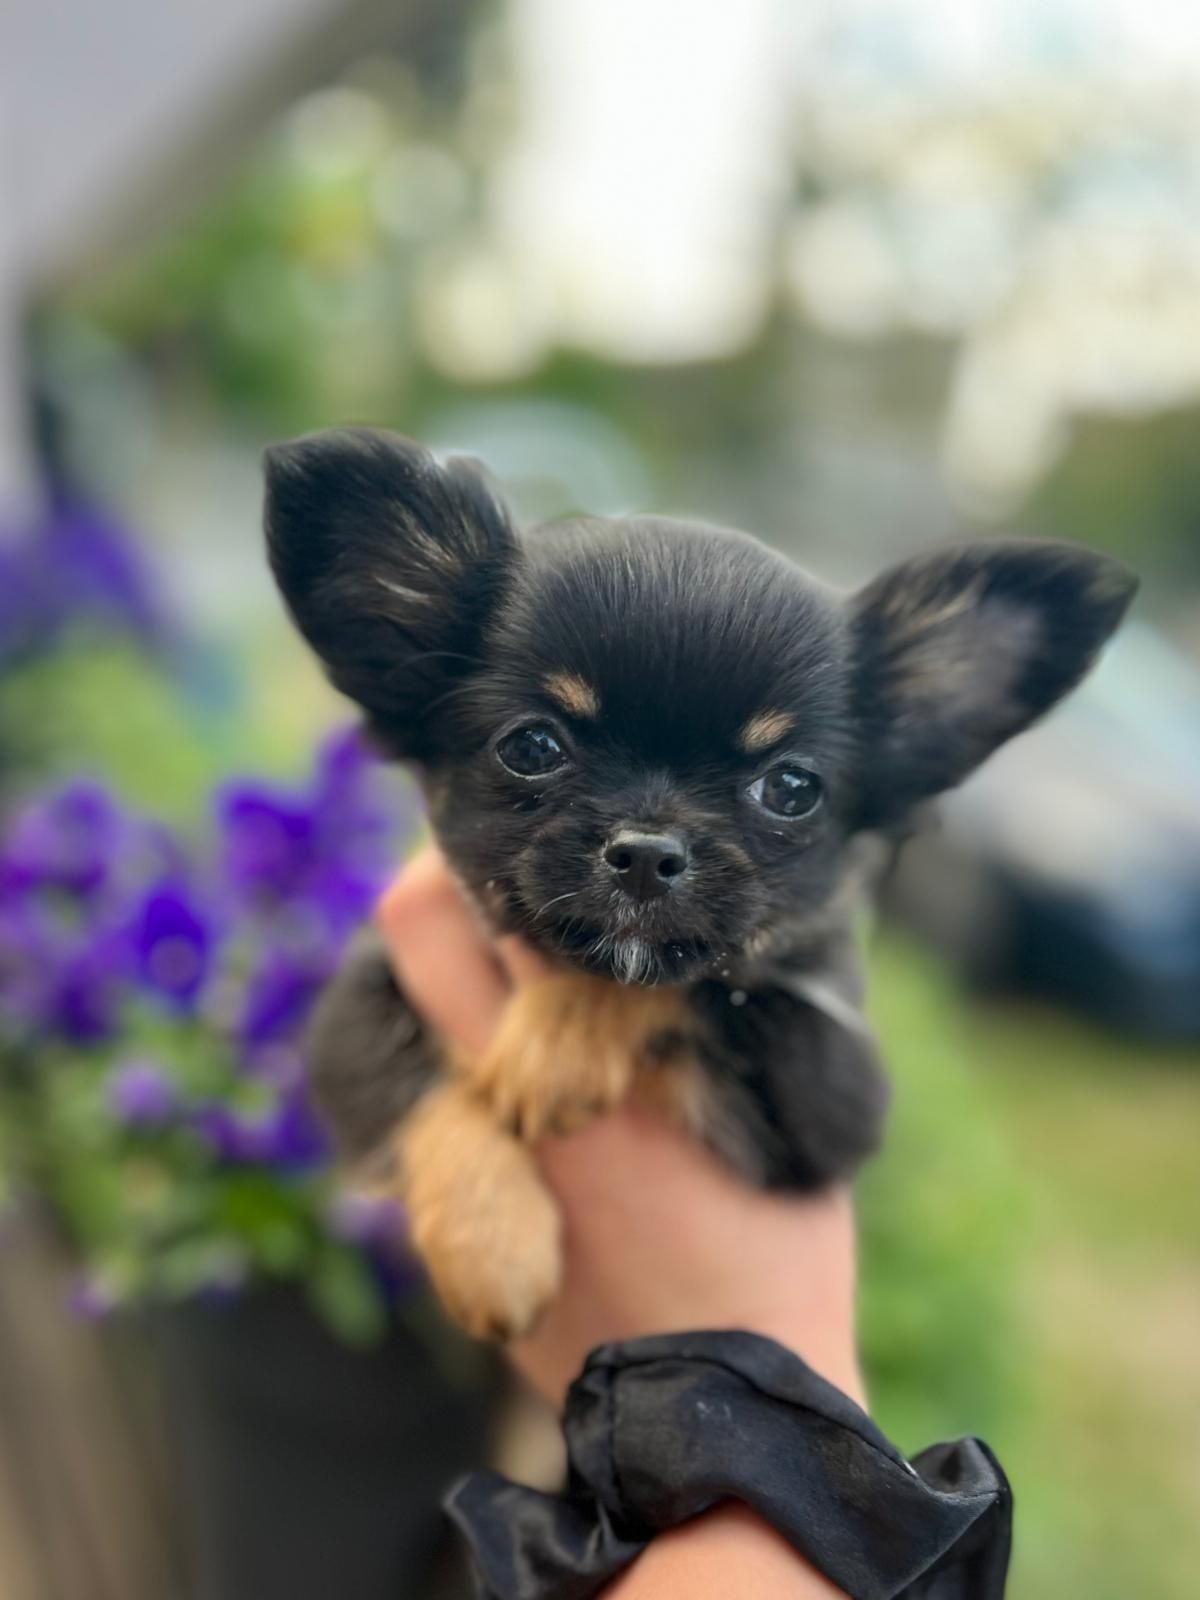 Chihuahua, dziewczynka, rodowód FCI